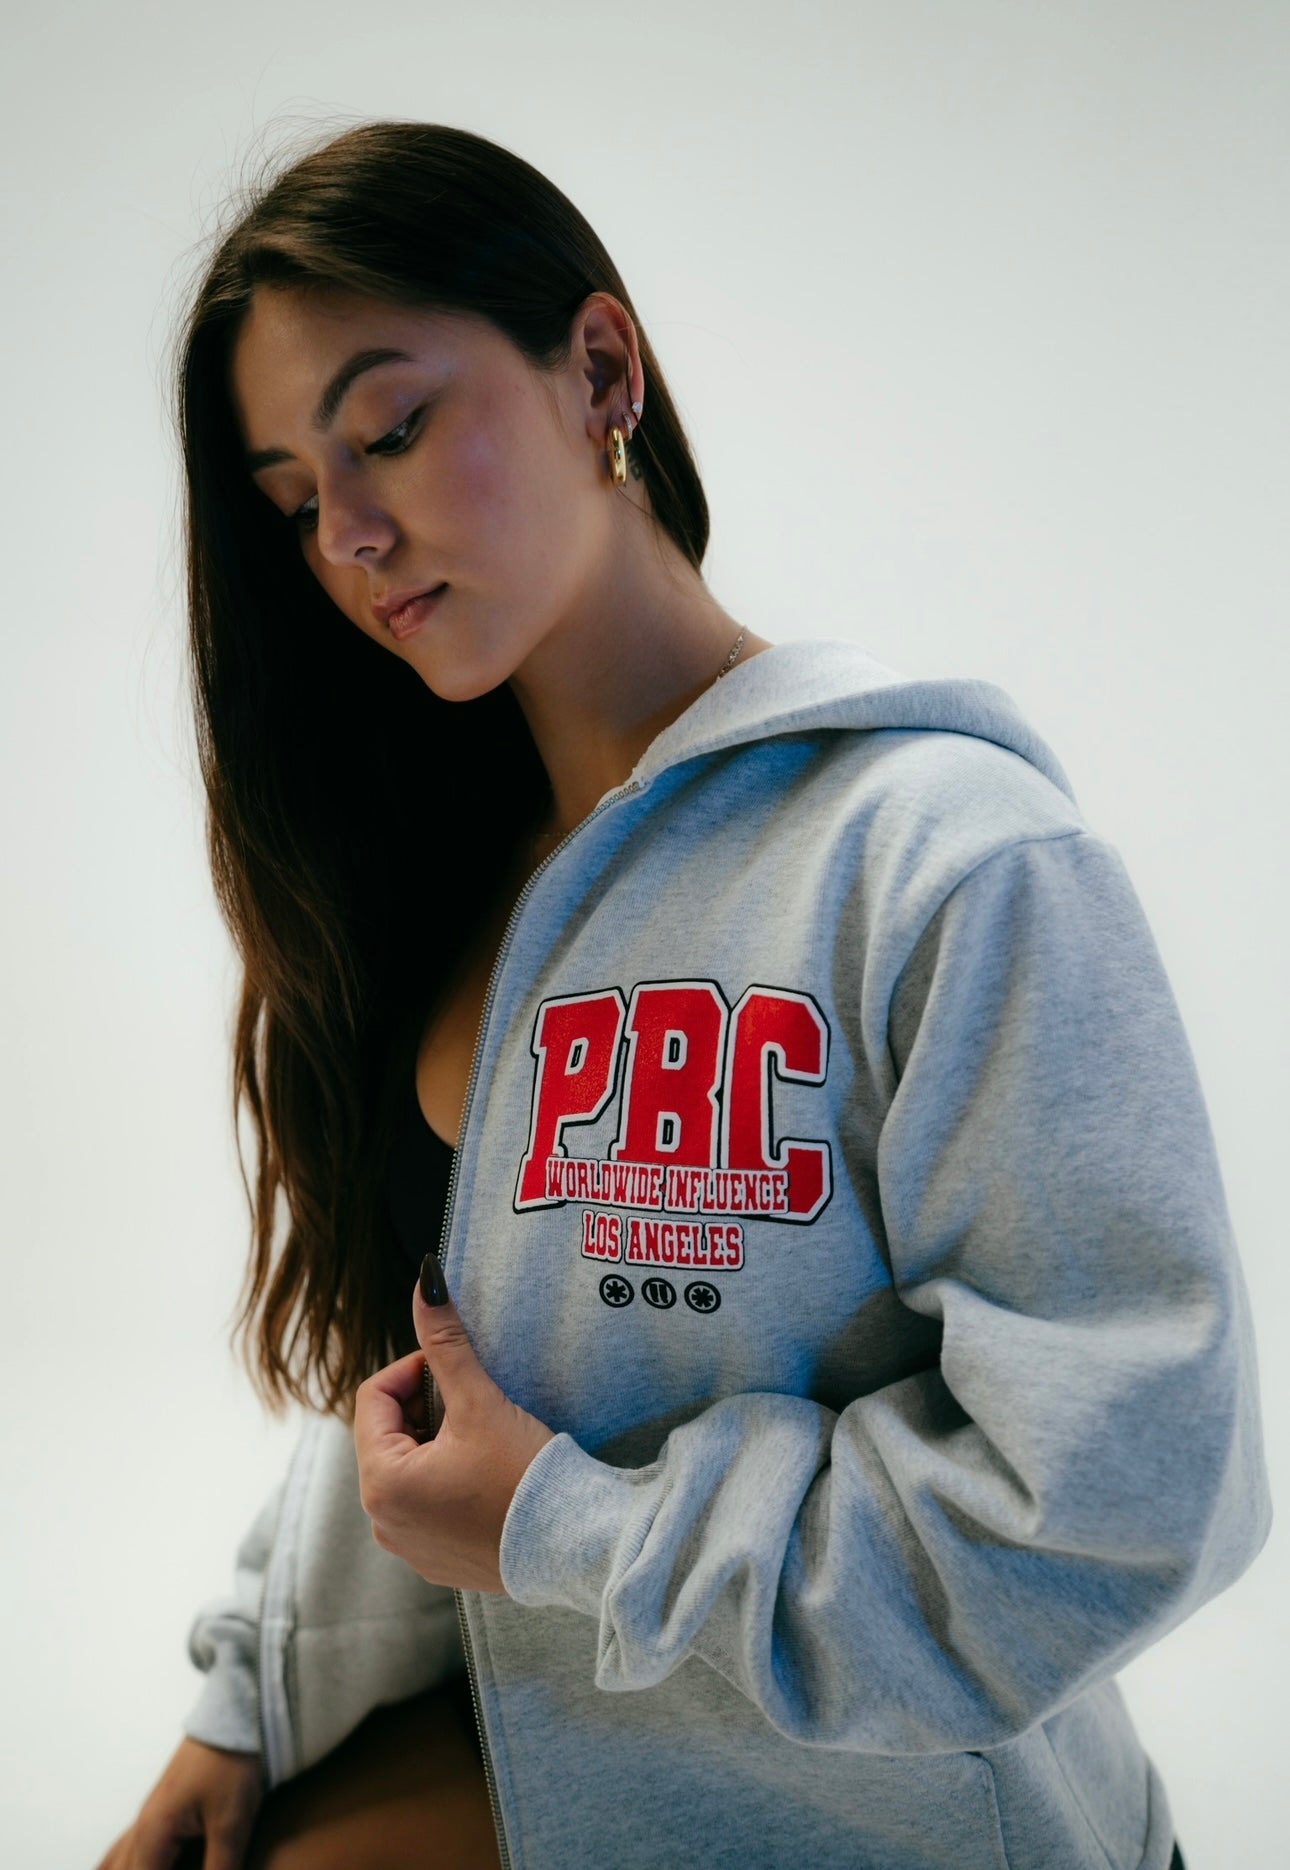 PBC Worldwide Full Zip Jacket (Grey)